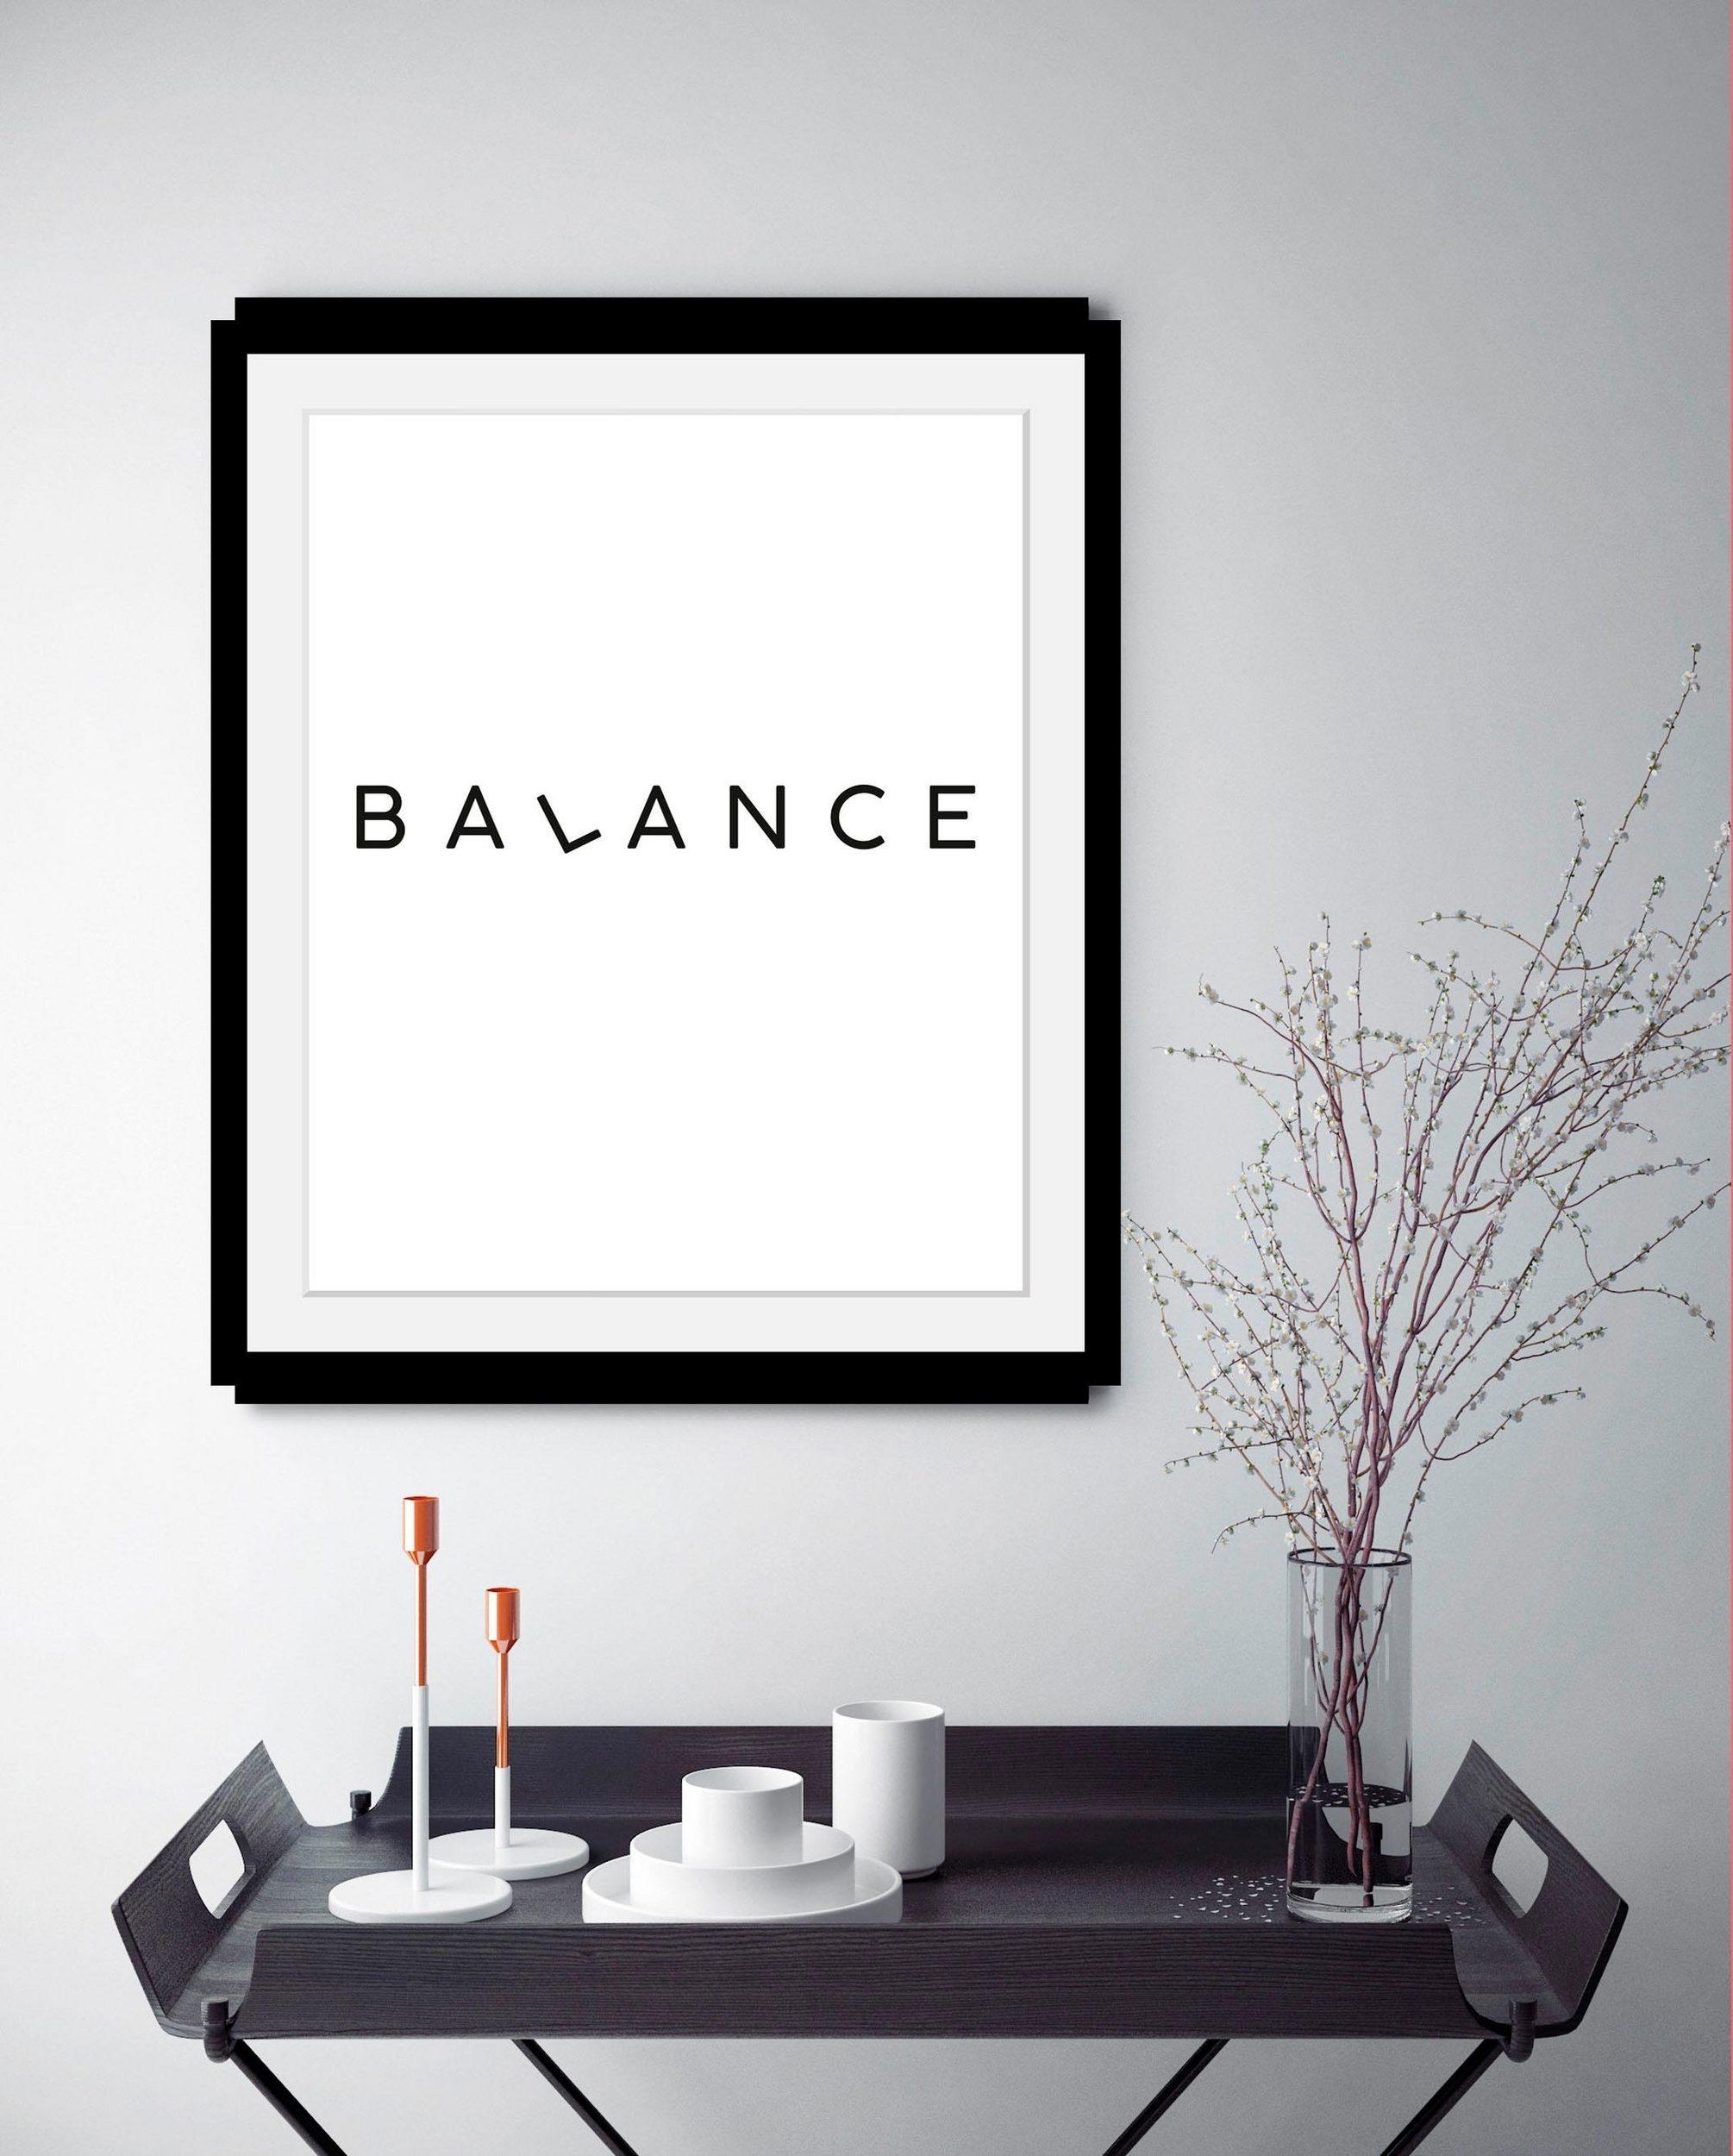 Immer schön die Balance halten! Deko in schwarz-weiß sorgt für eine entspannte Atmosphäre #otto #minimalistisch #deko